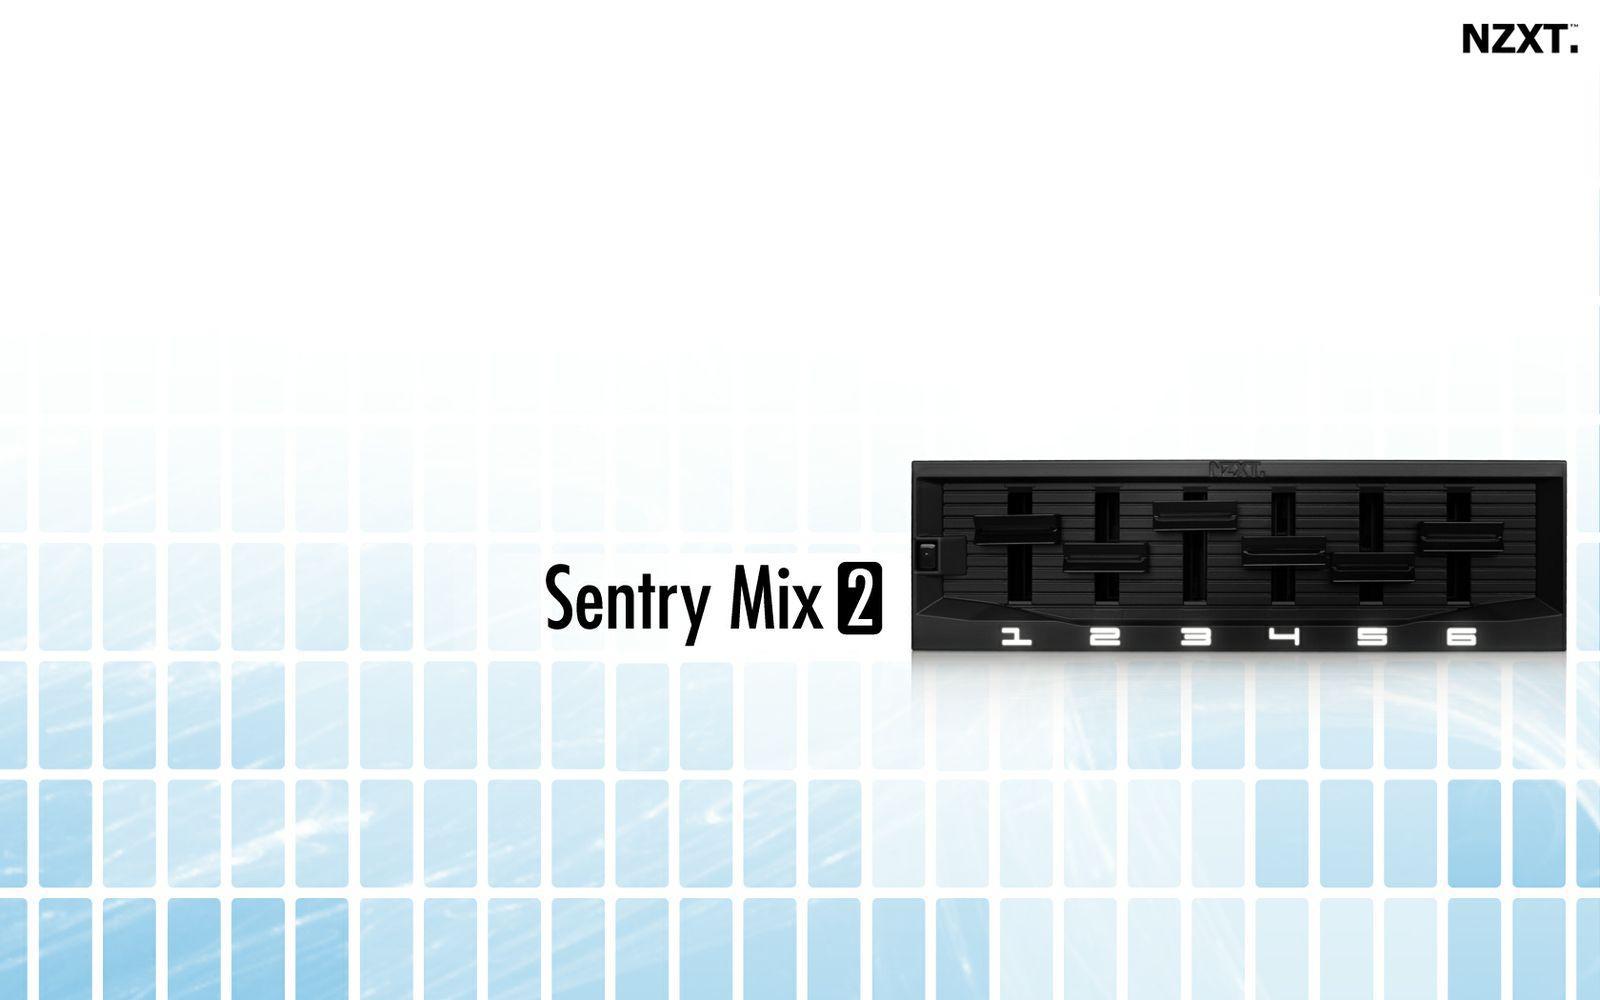 Sentry Mix2 Wallpaper 1680x1050, Jpg, - Nzxt , HD Wallpaper & Backgrounds